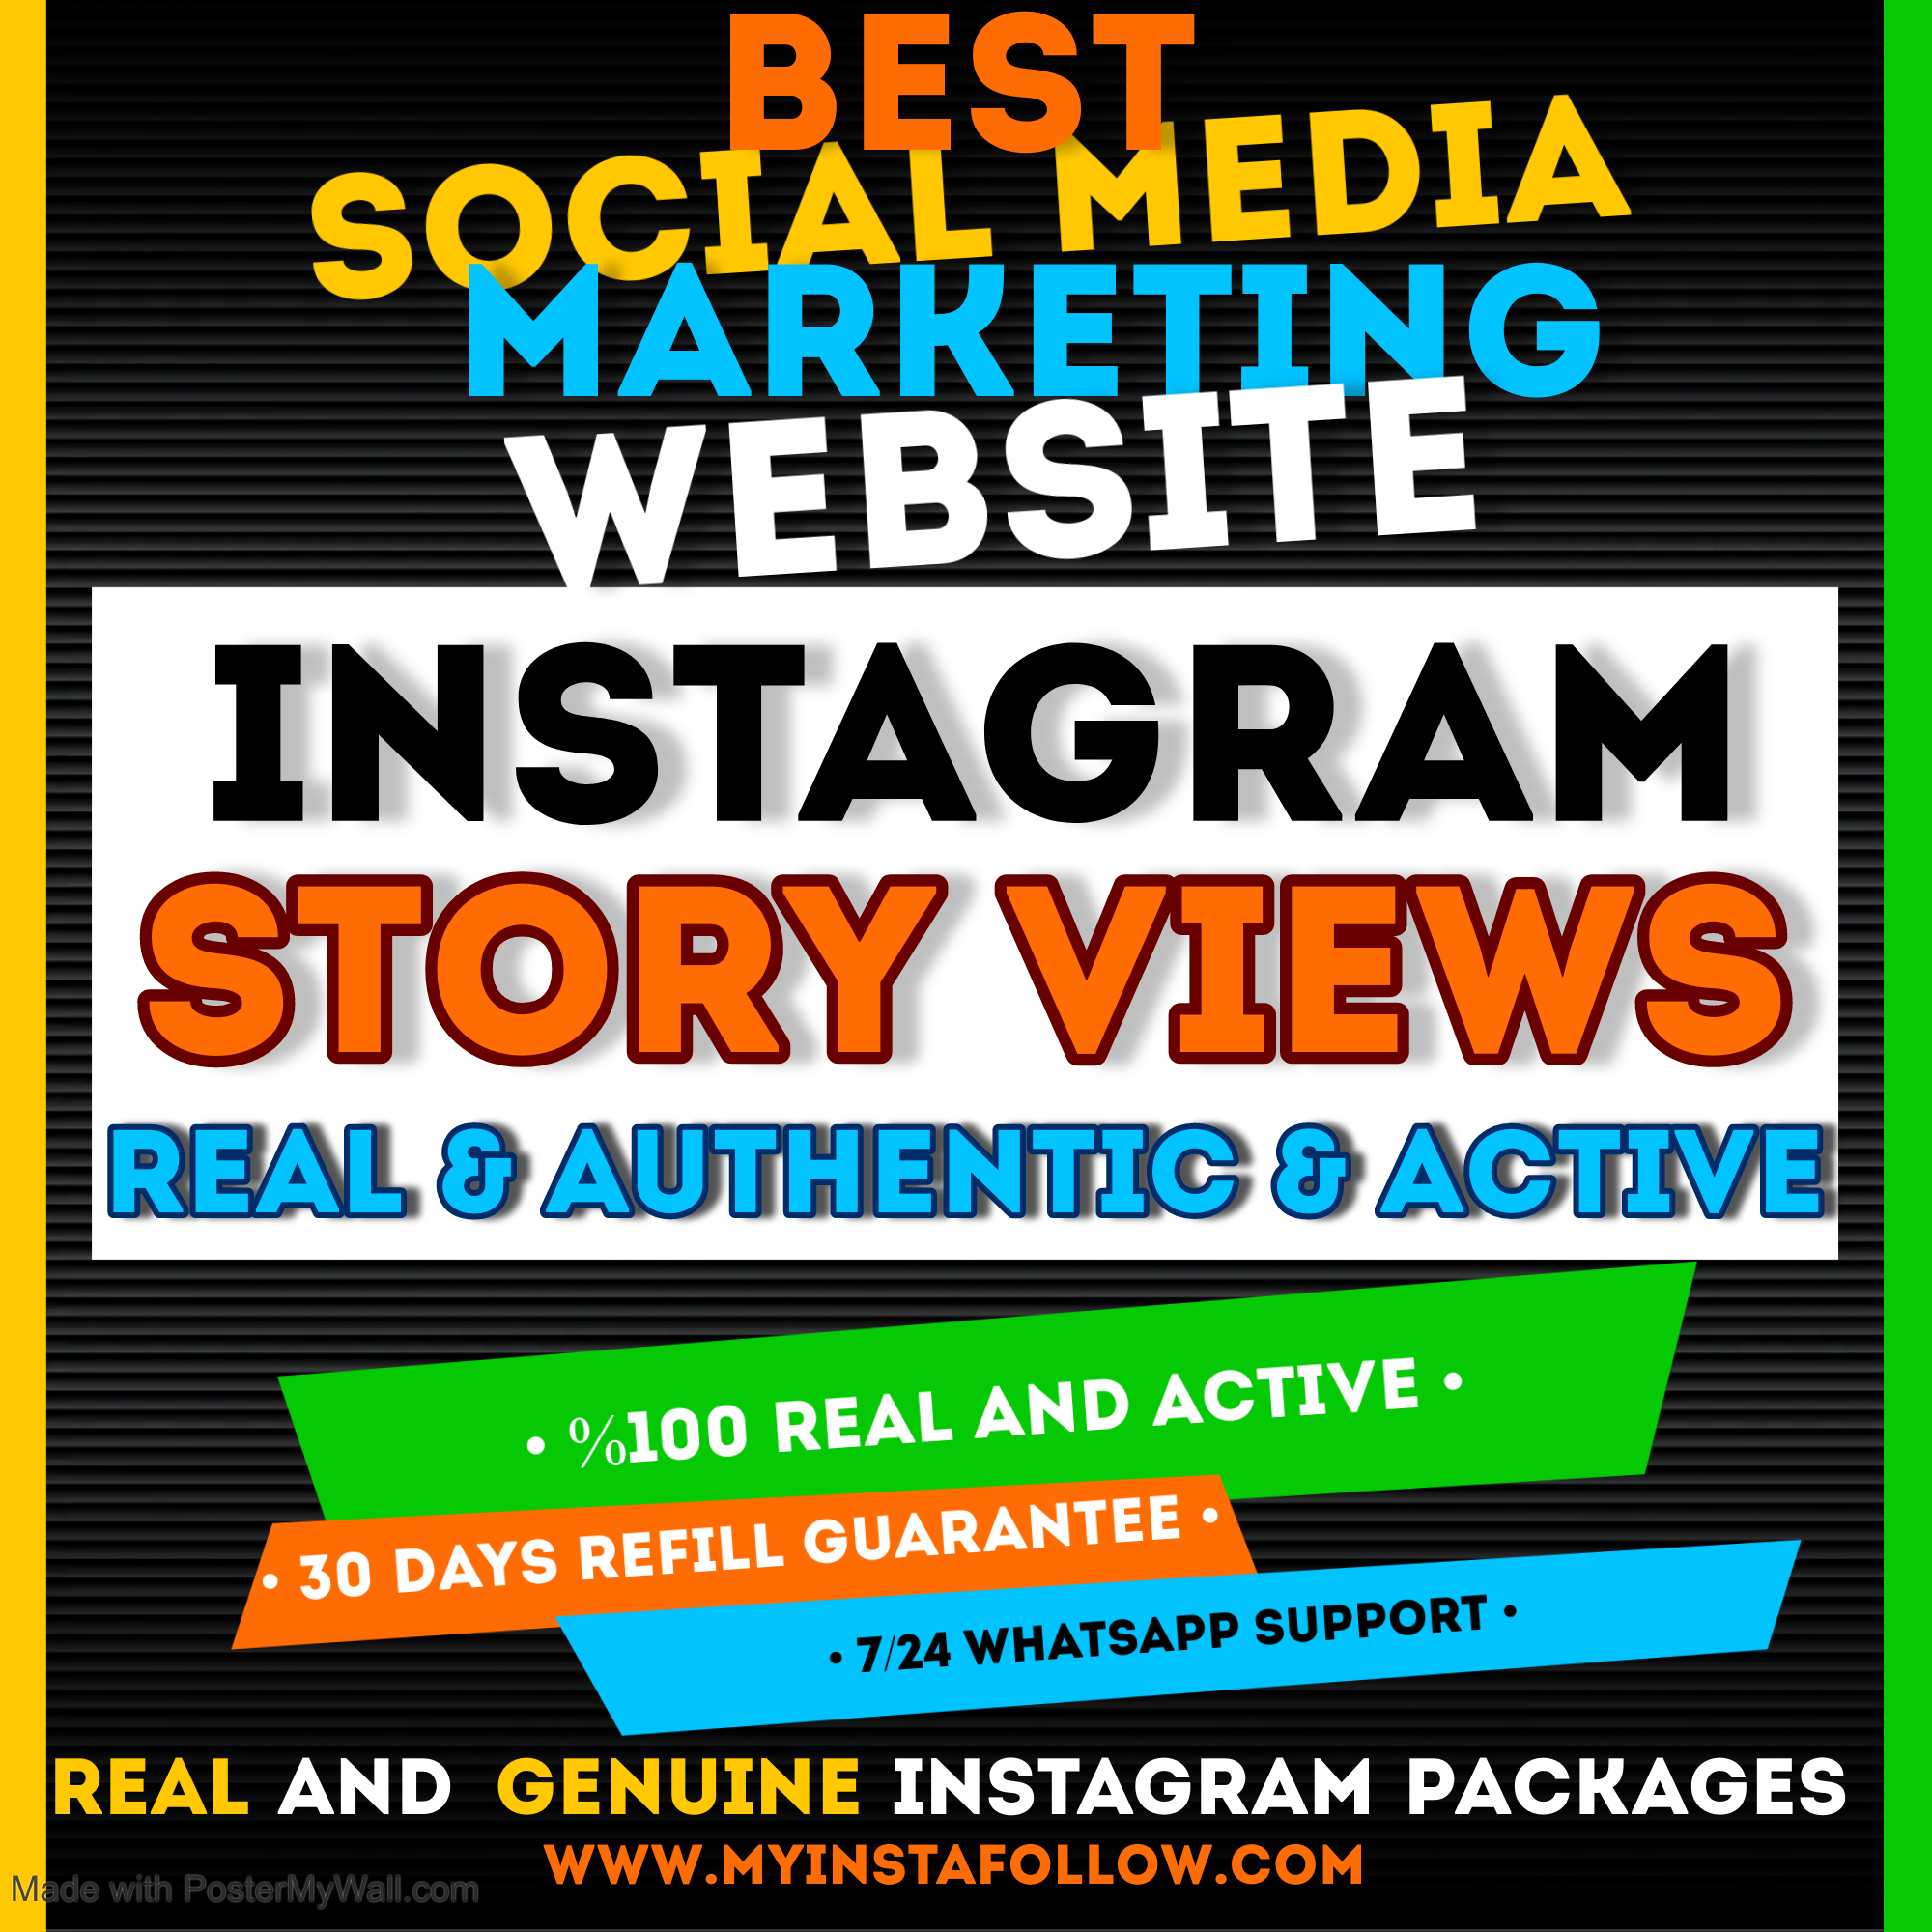 buy Instagram Story Views